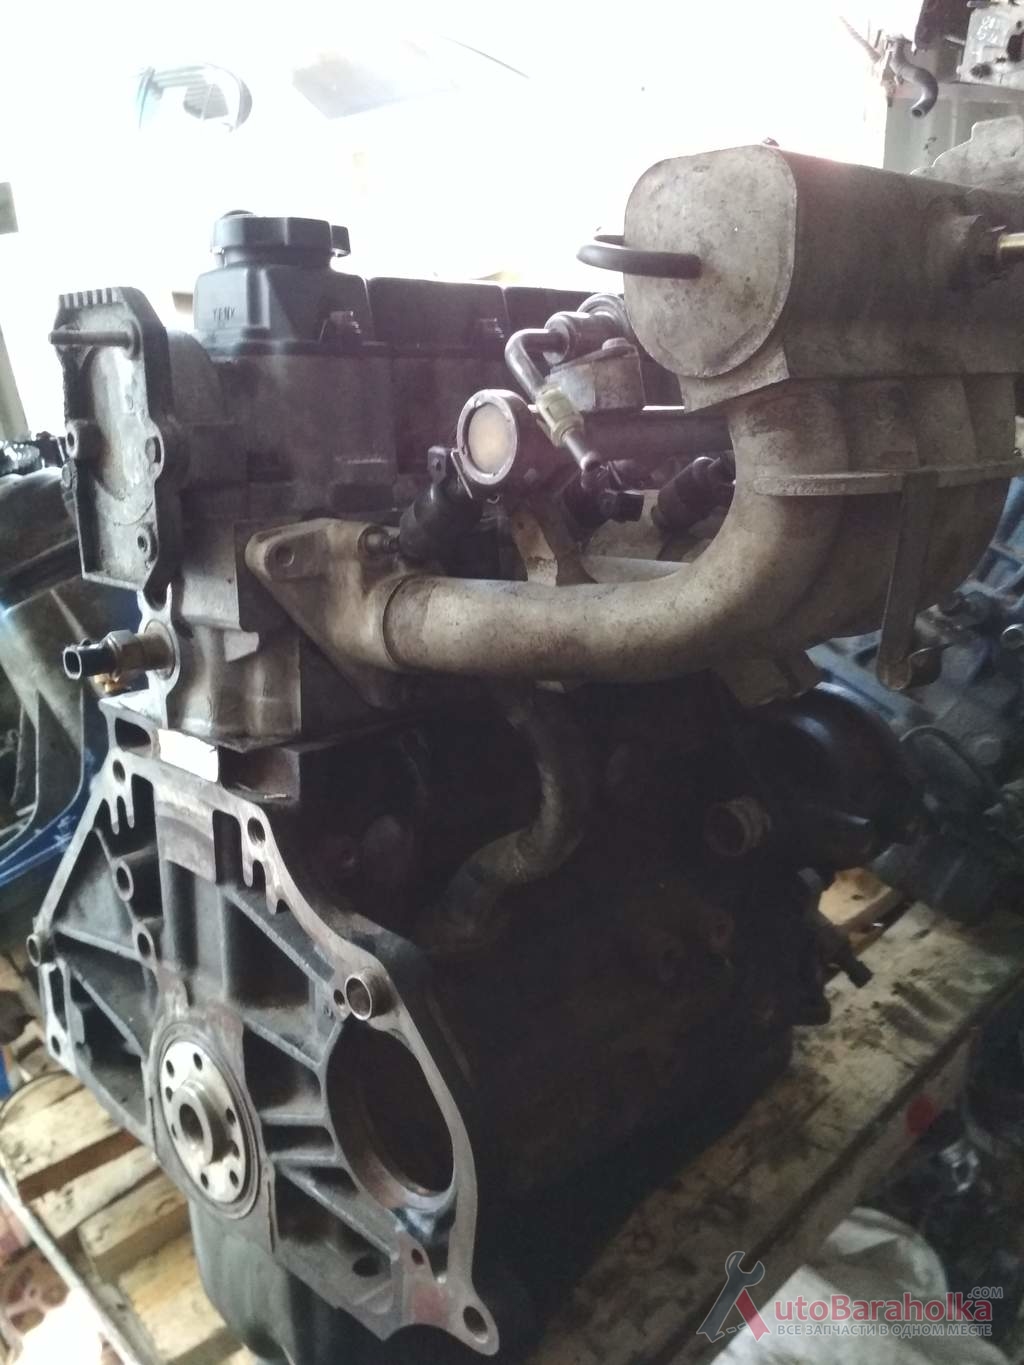 Продам Двигатель Deawoo Lanos 1.5 8кл из Польши. малый пробег. отличное состояние. проверенный. Гарантия Херсон